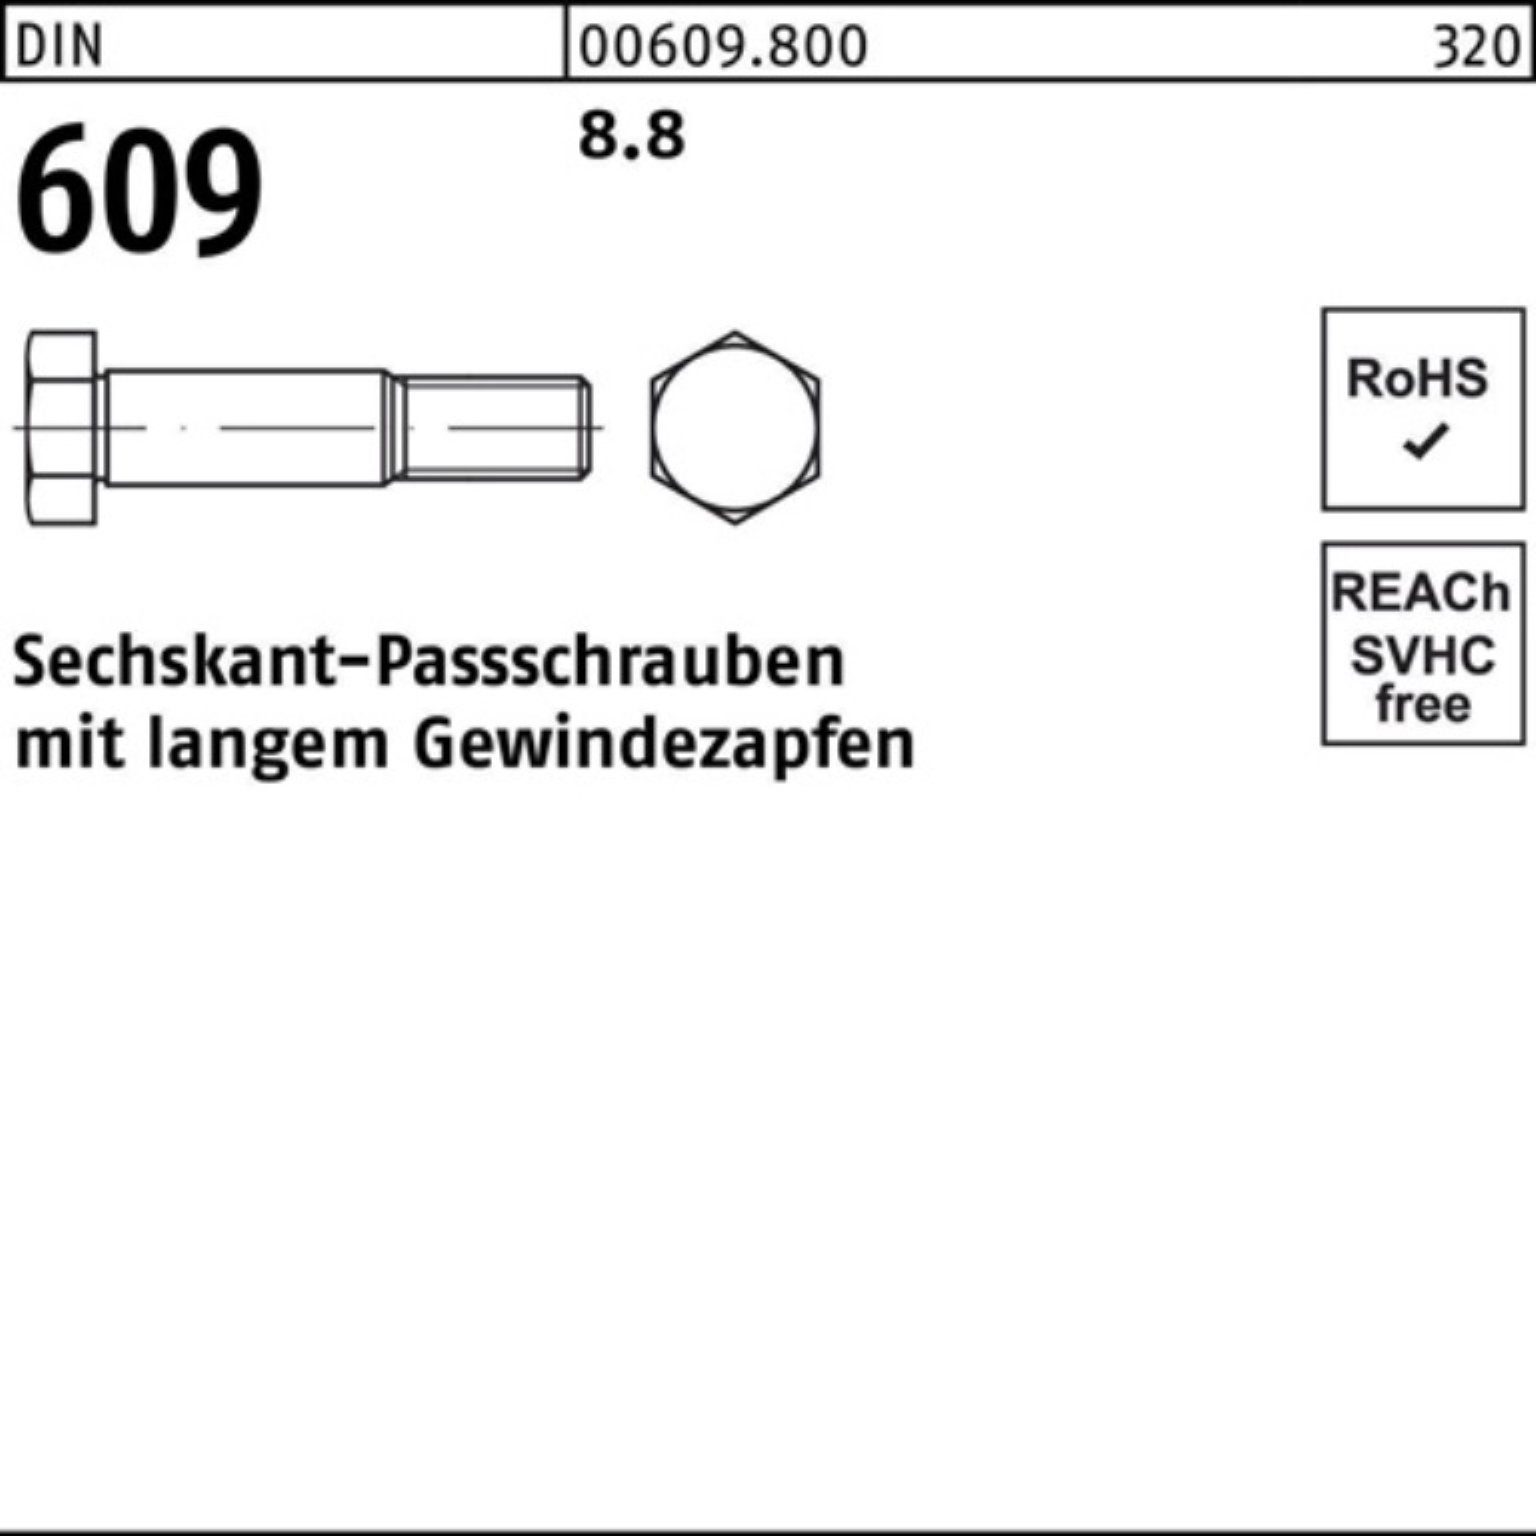 Gewindezapfen 200 Reyher 100er Pack langem M20x DIN 609 Schraube Sechskantpassschraube